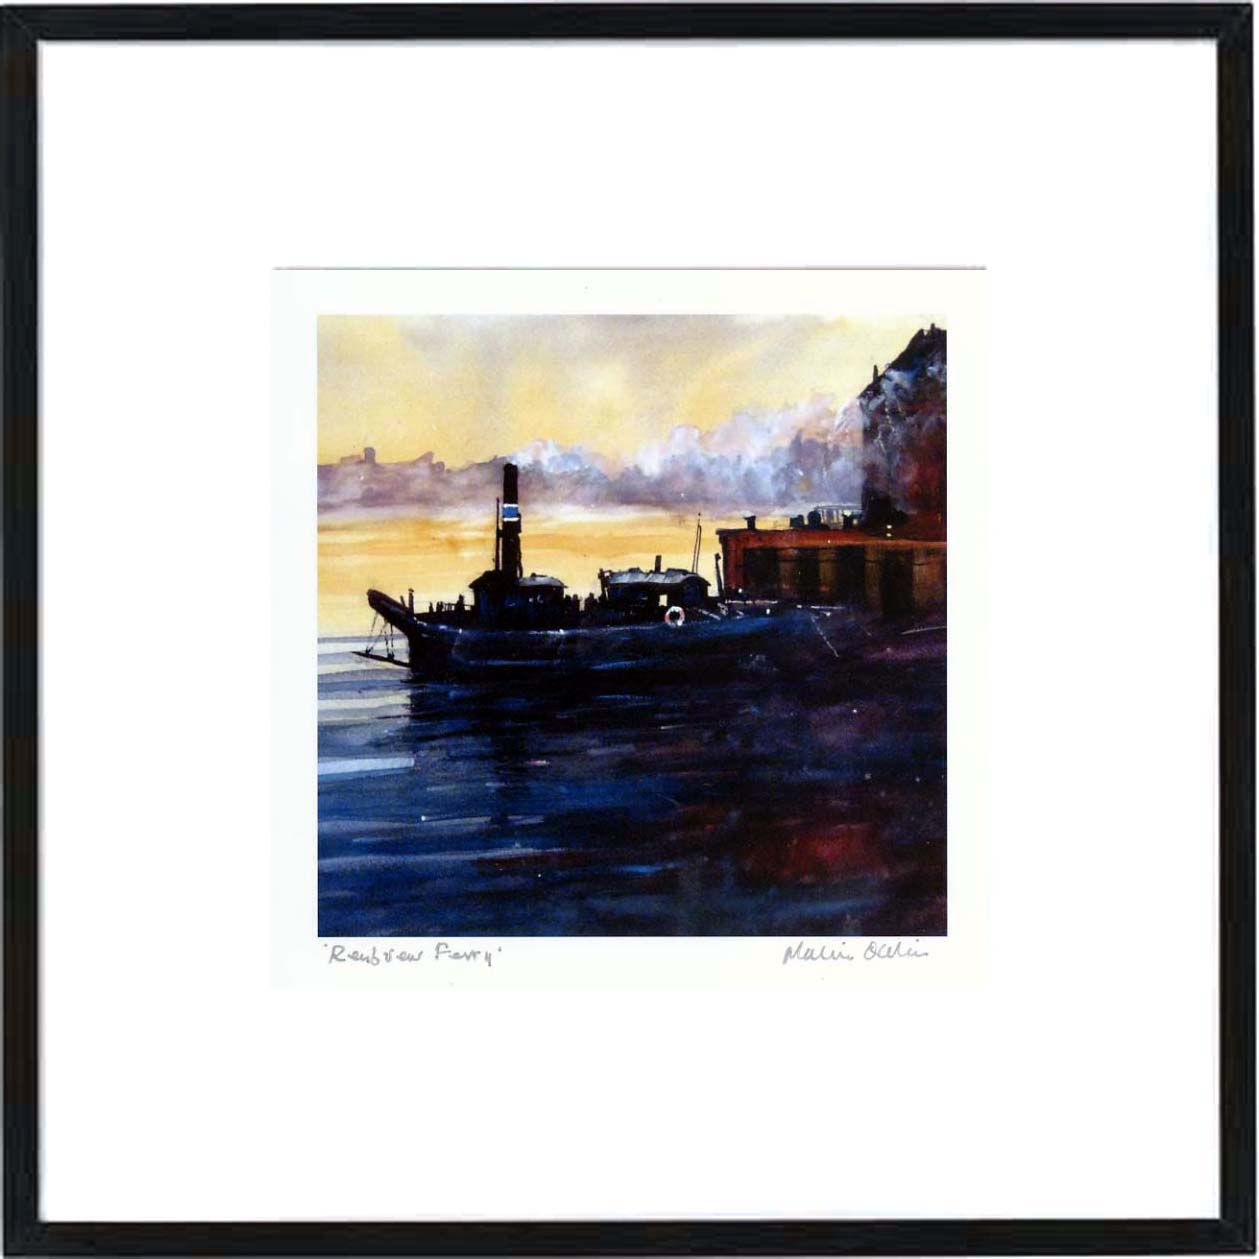 Renfrew Ferry Framed Print